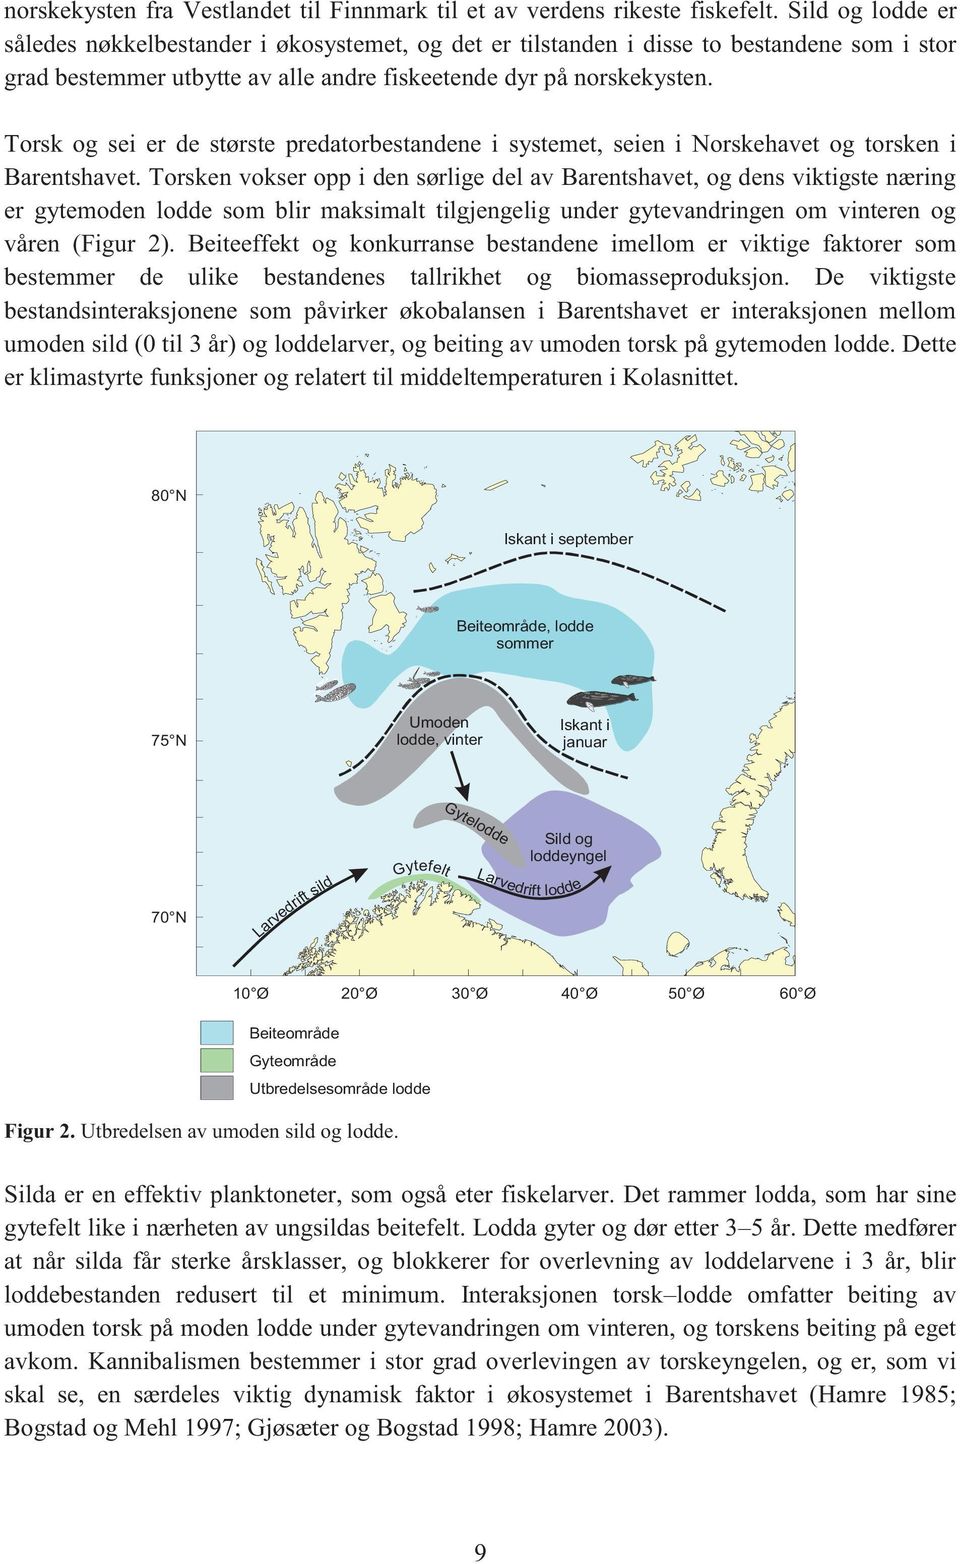 Torsk og sei er de største predatorbestandene i systemet, seien i Norskehavet og torsken i Barentshavet.